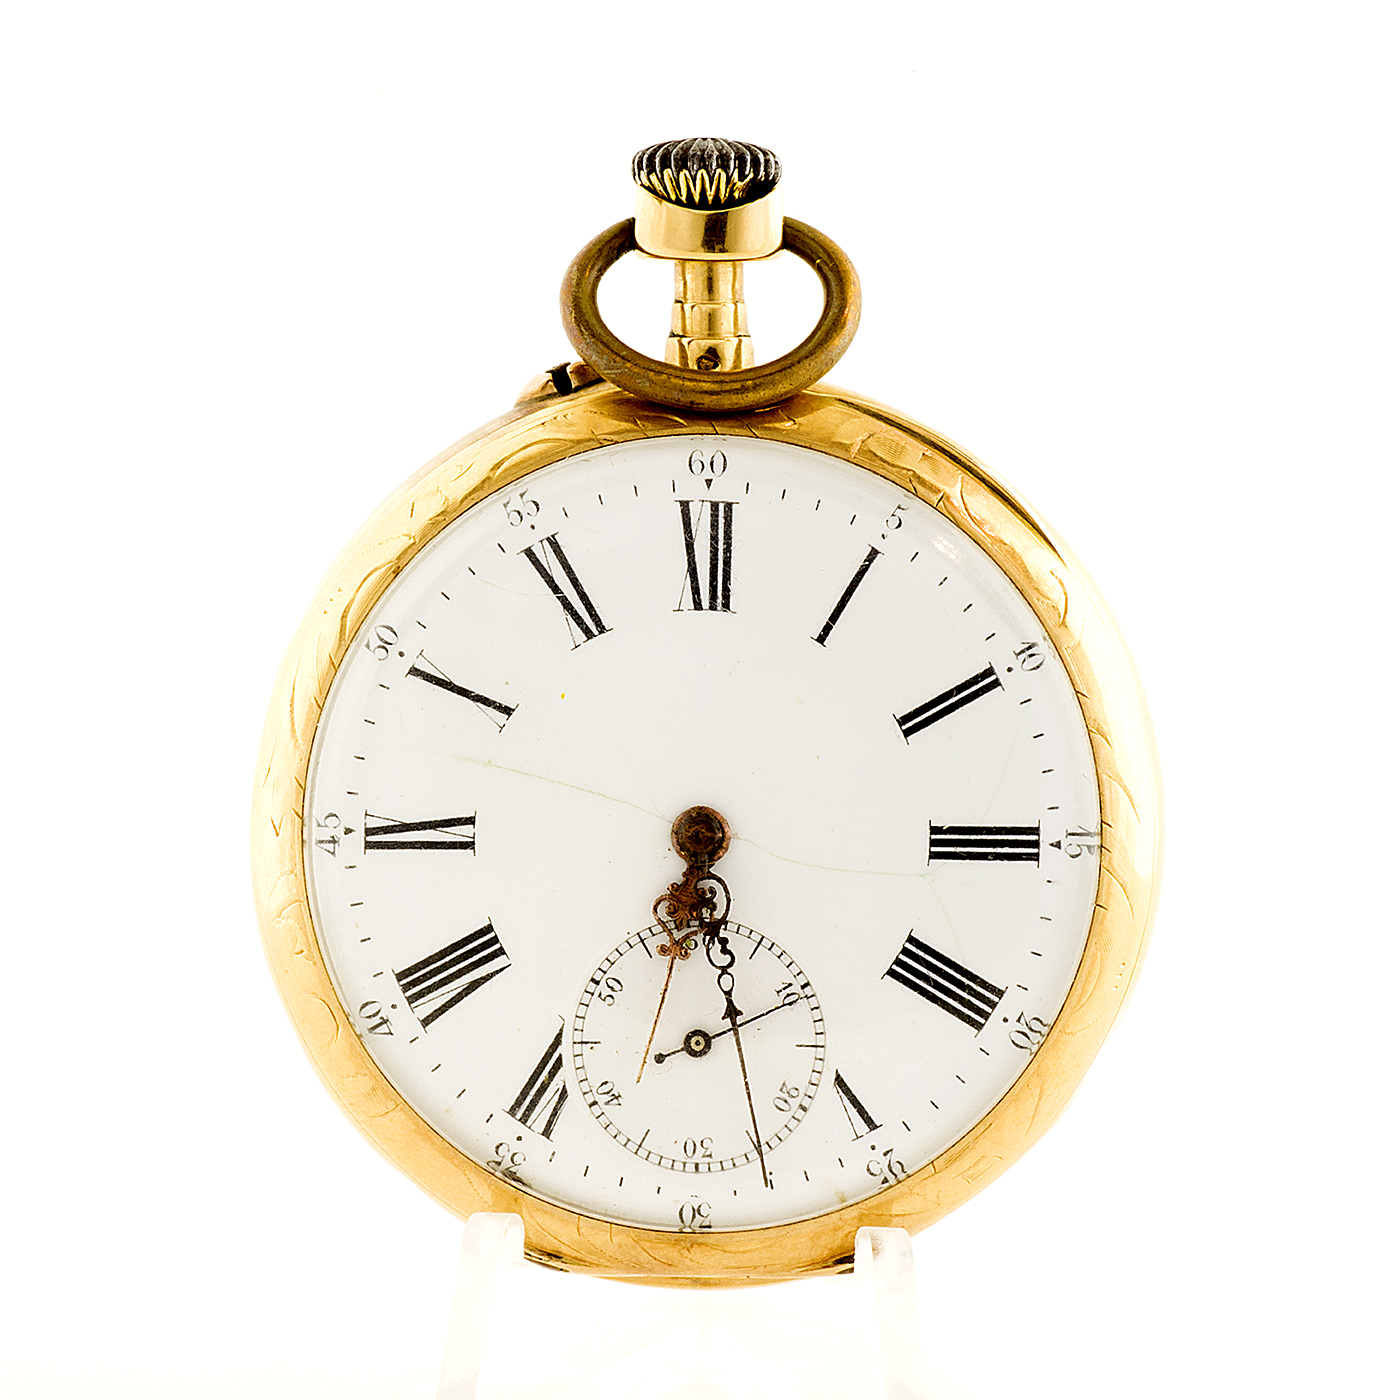 Reloj de bolsillo para caballero, lepine y remontoir. Fabricante Suizo. Fecha ca. 1880